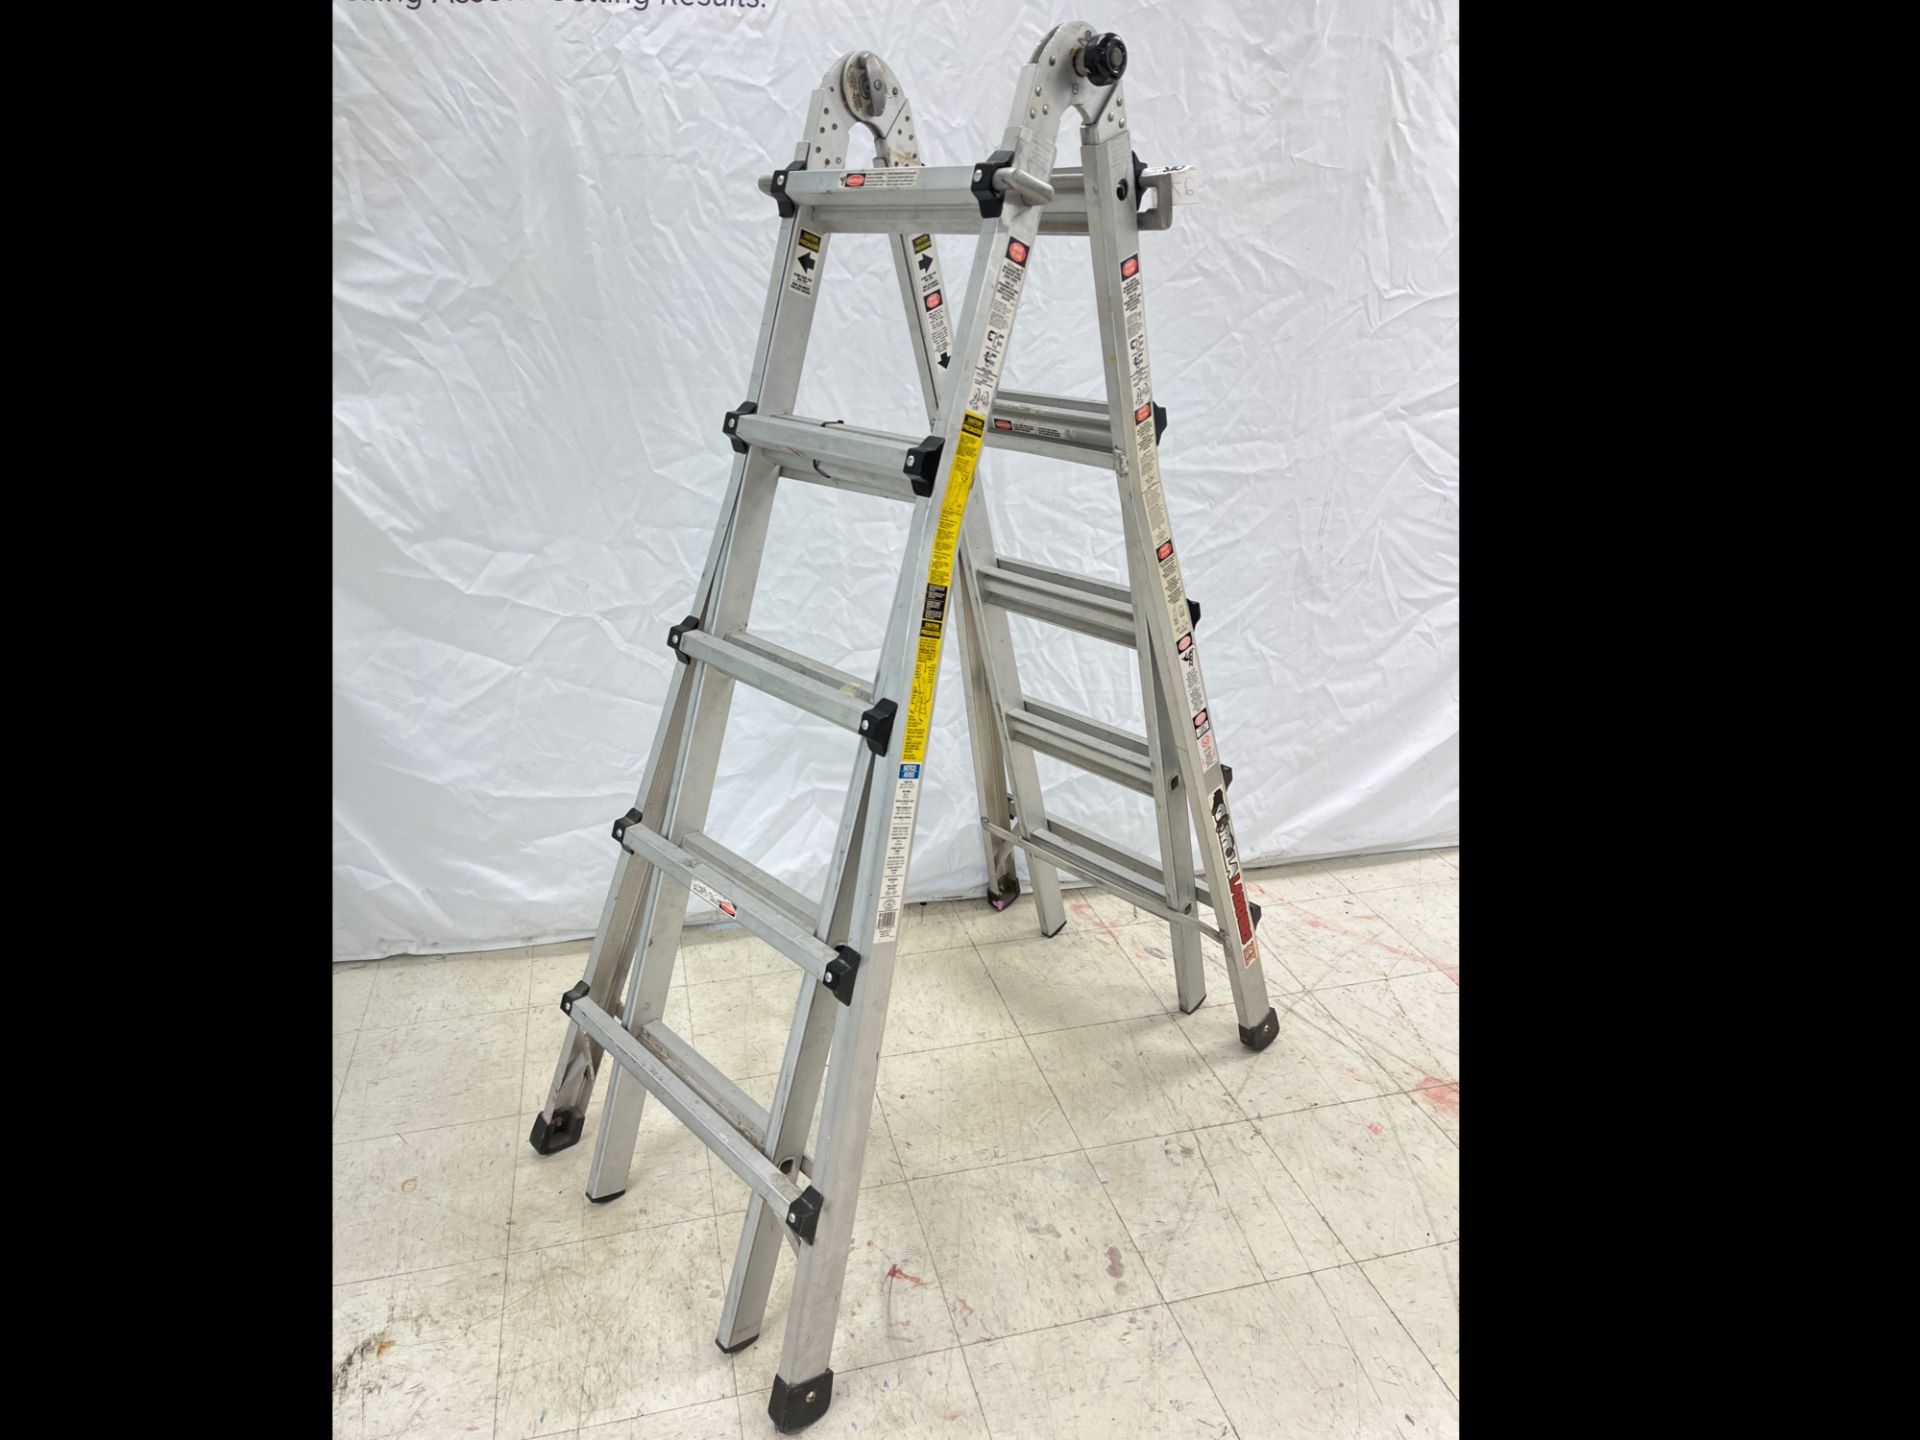 Gorilla Adjustable A-Frame Ladder